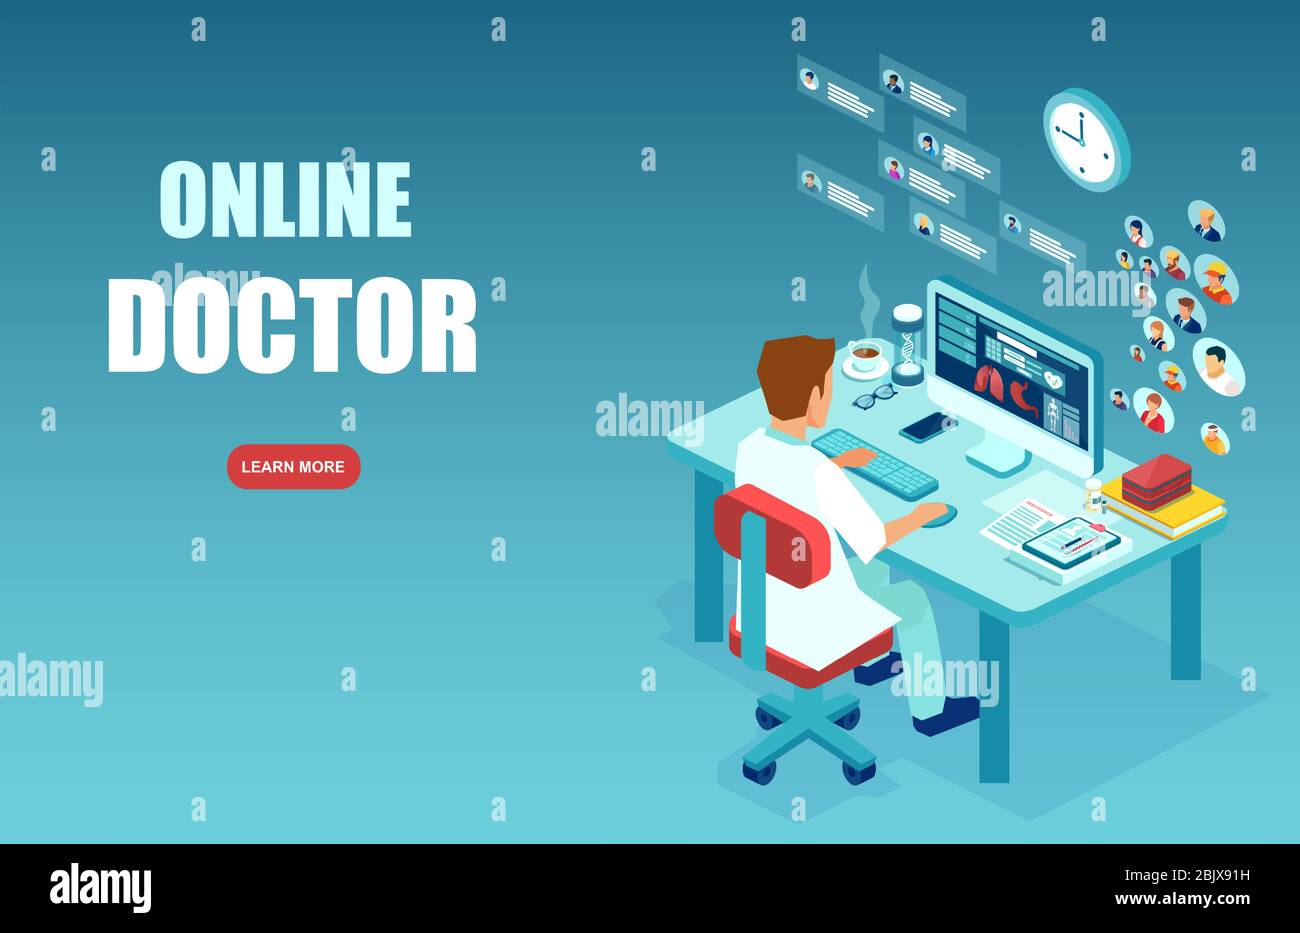 Online-Konzept für medizinische Dienste. Vektor der medizinischen Fachkraft, ein Arzt, der Diagnose, die Berücksichtigung der Patienten über moderne Technologie, int Stock Vektor